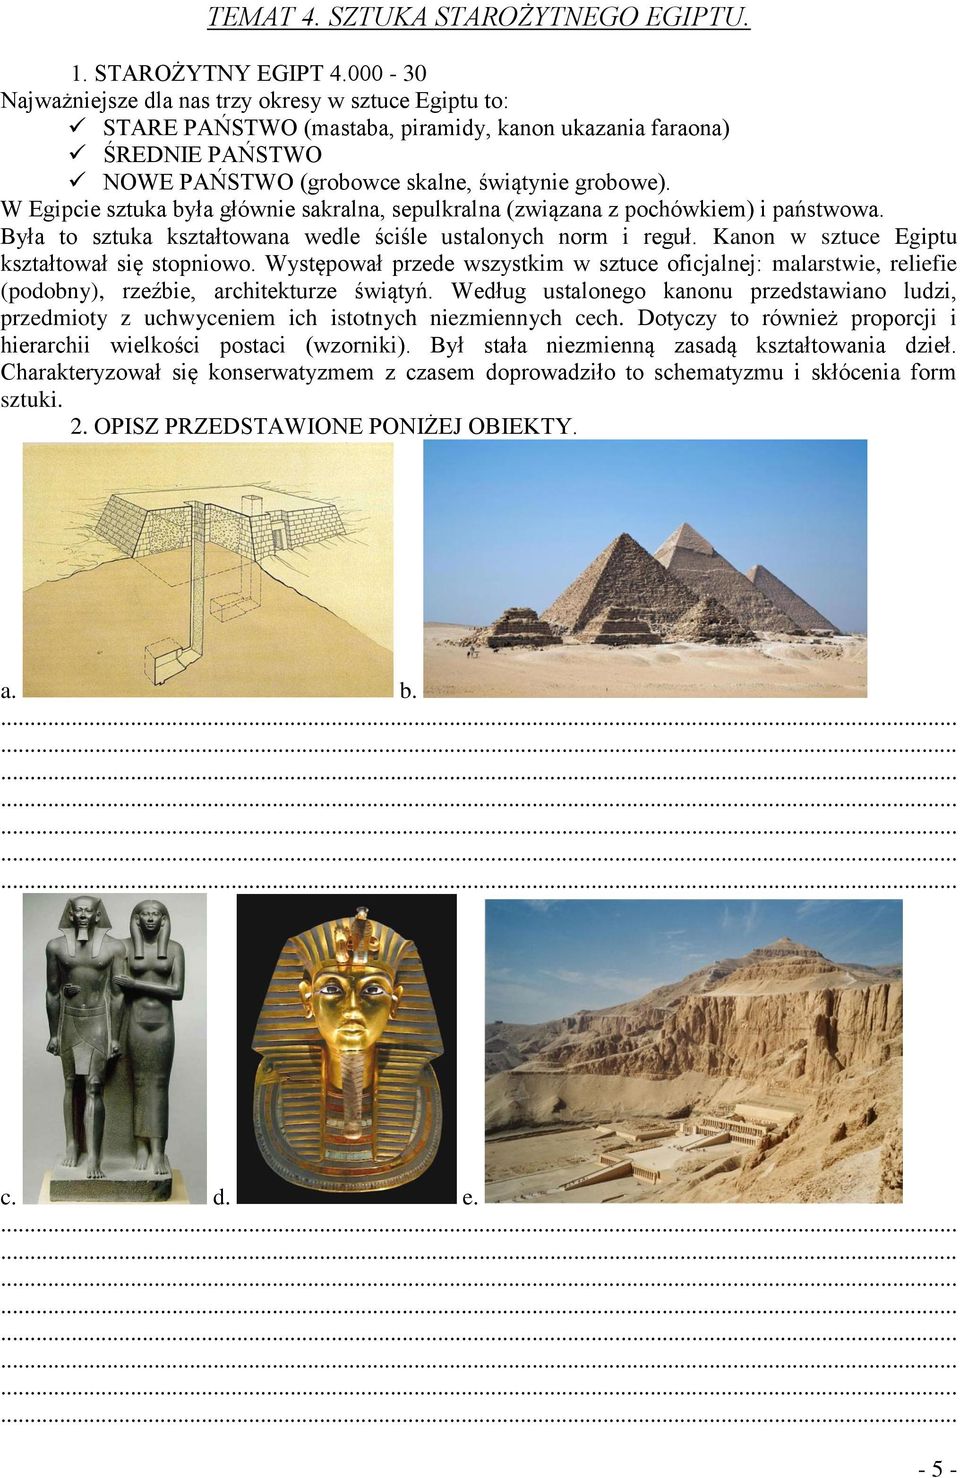 W Egipcie sztuka była głównie sakralna, sepulkralna (związana z pochówkiem) i państwowa. Była to sztuka kształtowana wedle ściśle ustalonych norm i reguł.